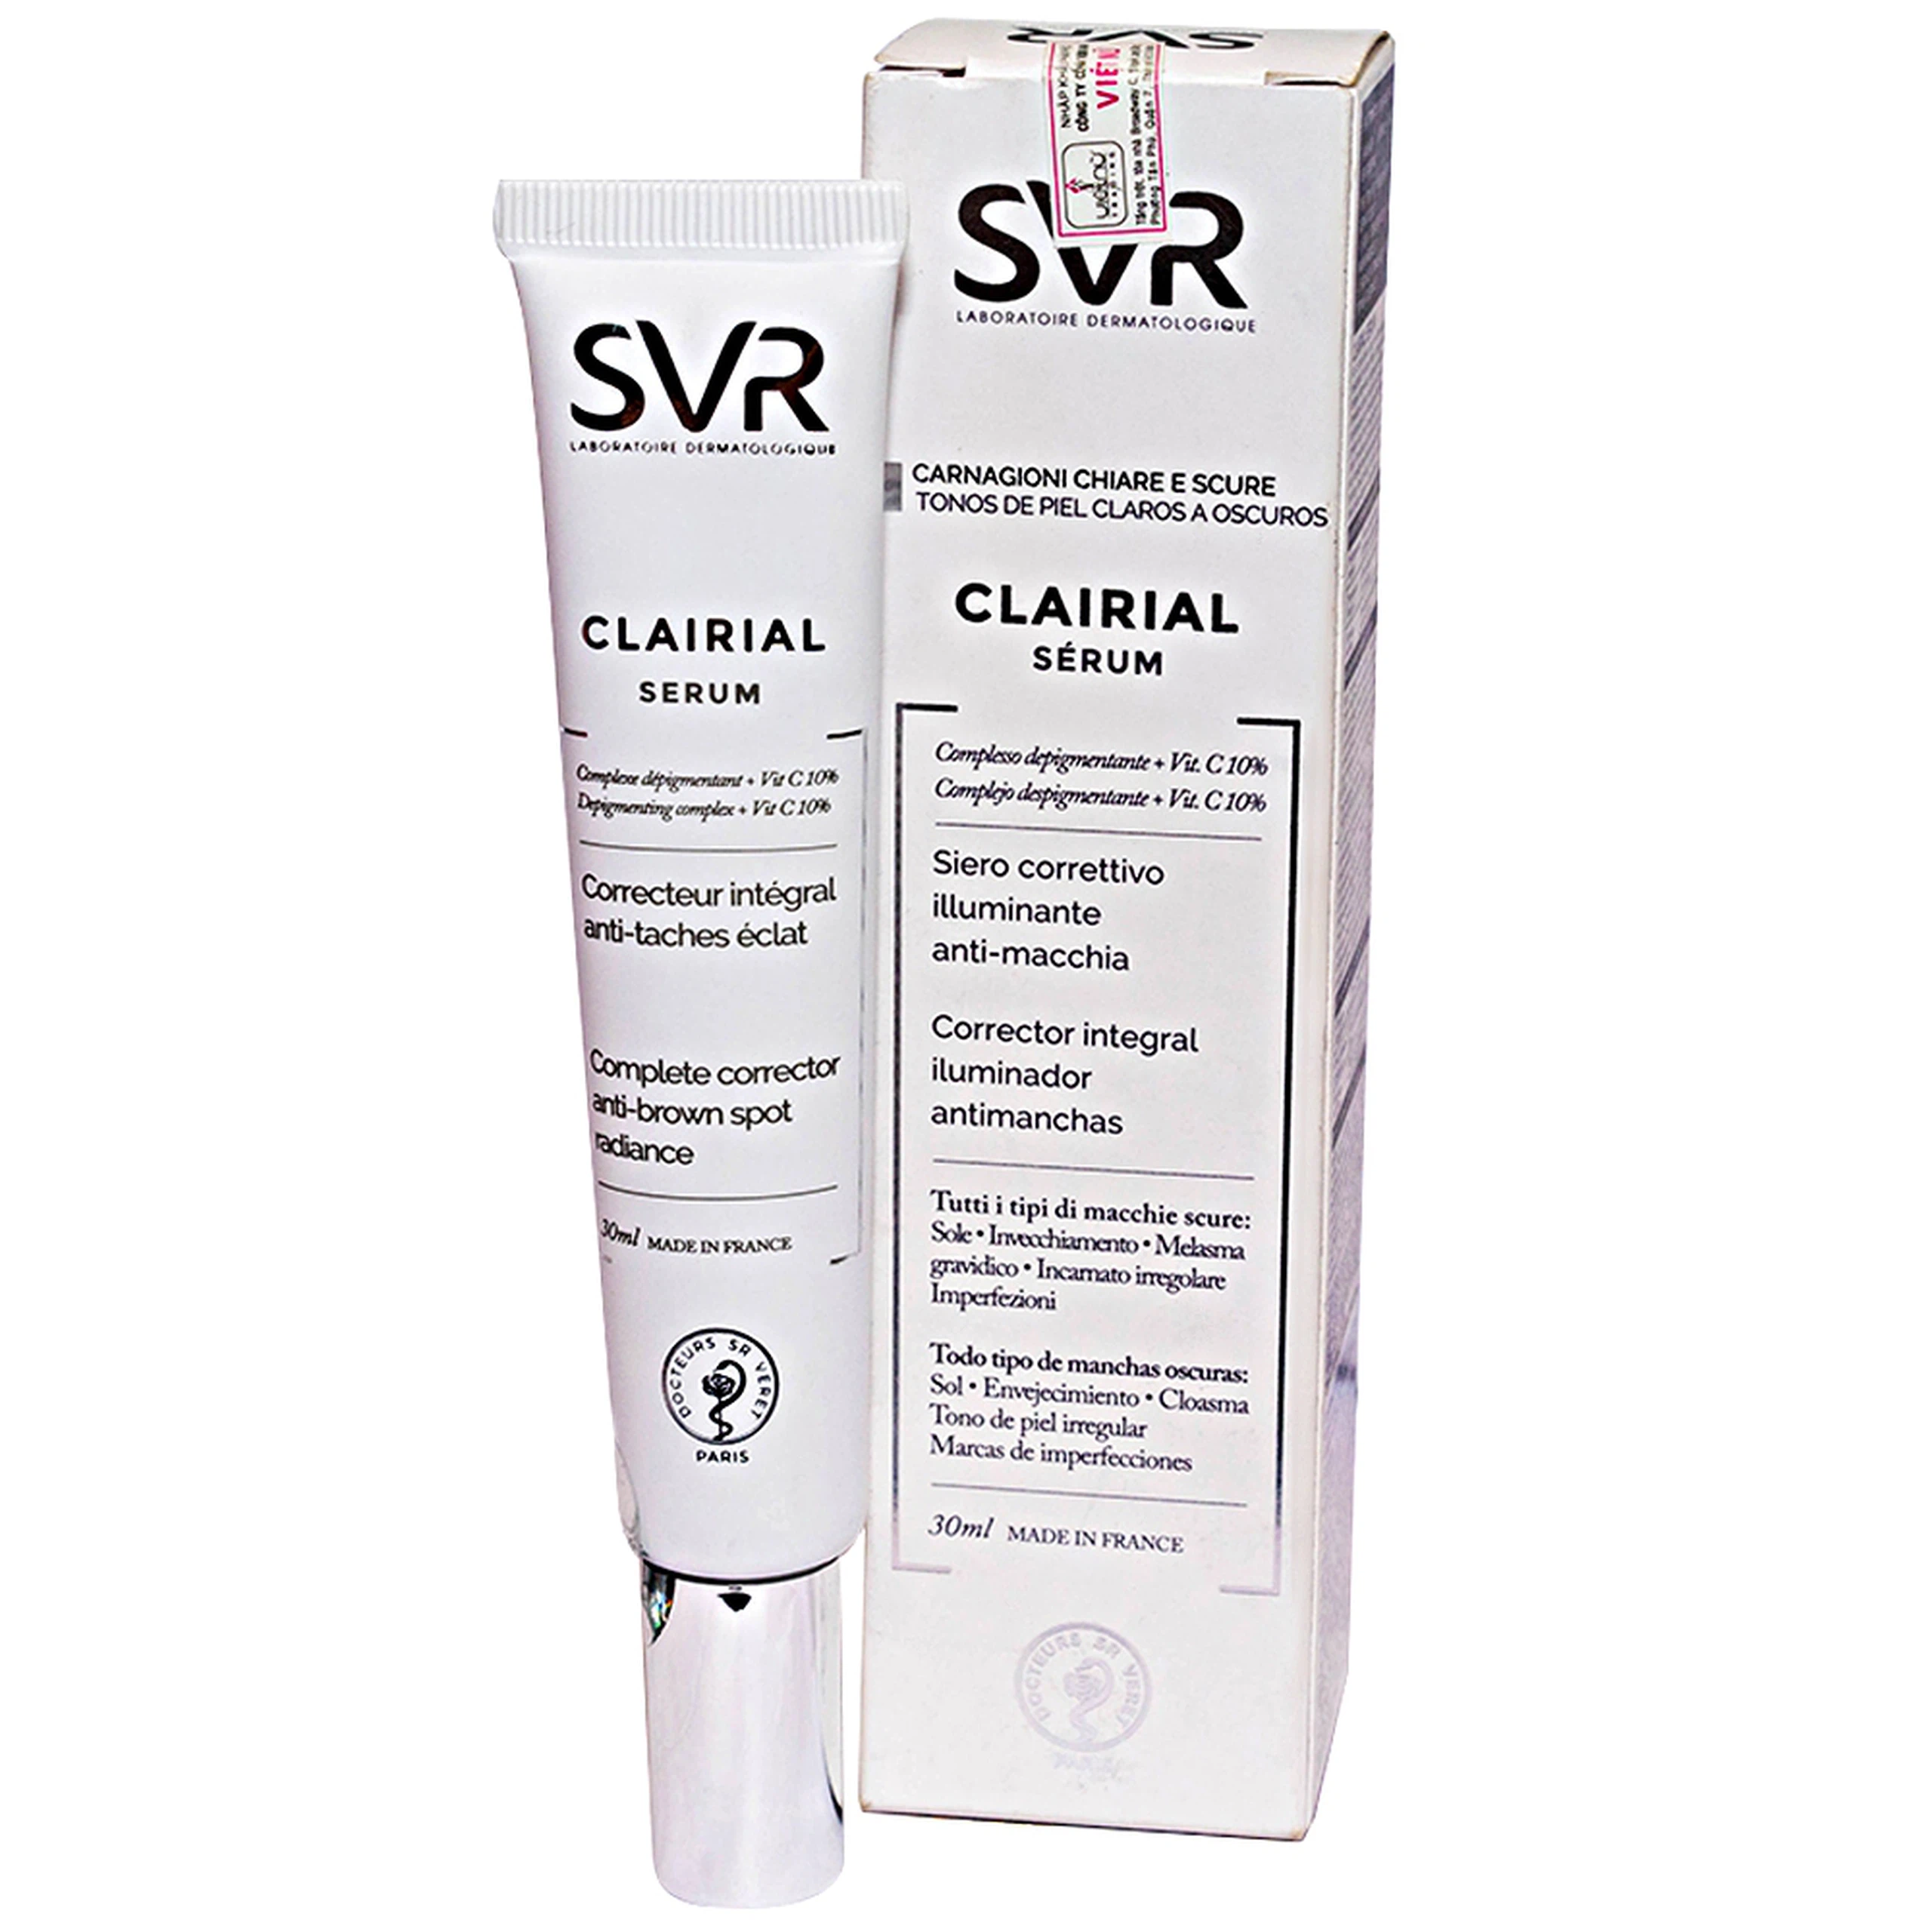 Tinh chất SVR Clairial Serum làm mờ các vết sạm, nám và đốm nâu trên bề mặt da (30ml)